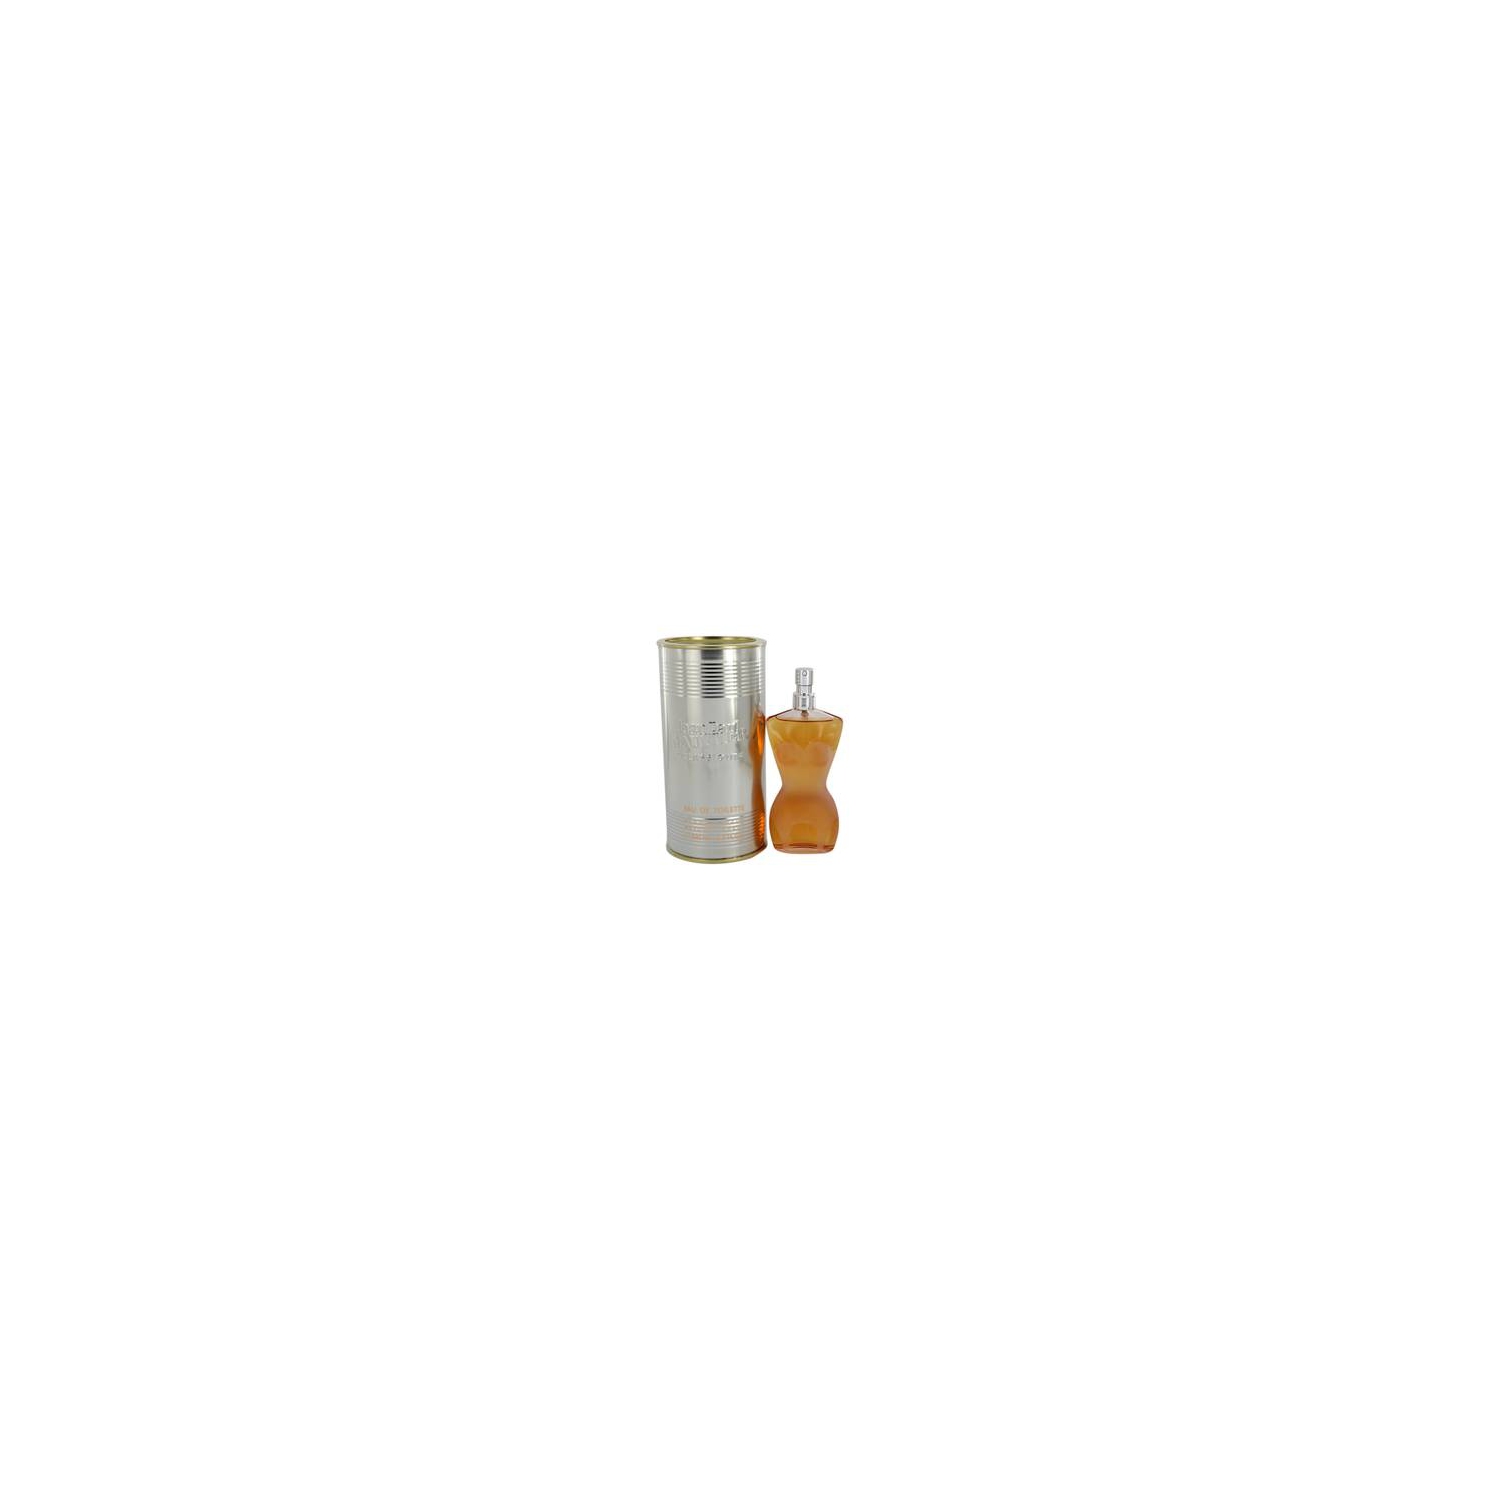 Jean Paul Gaultier Perfume by Jean Paul Gaultier 100 ml Eau De Toilette Spray